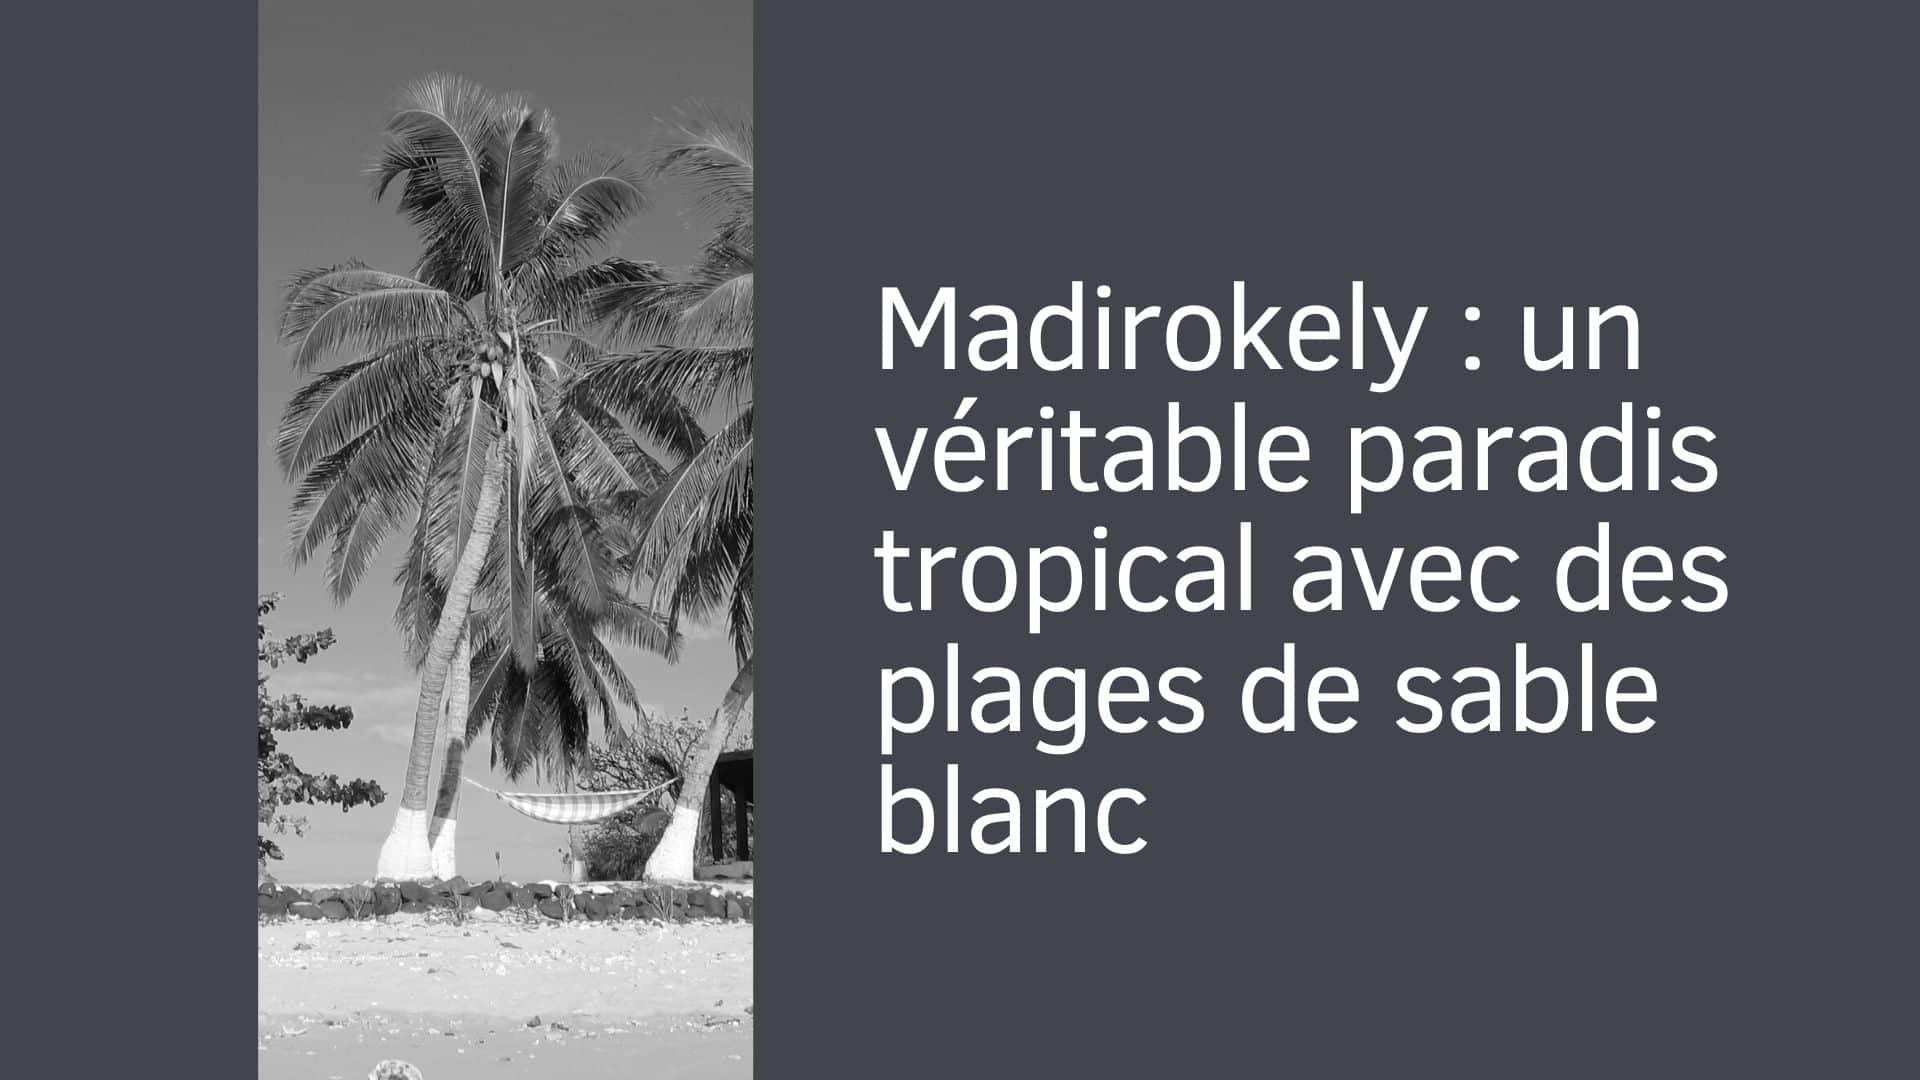 Madirokely : un véritable paradis tropical avec des plages de sable blanc bordées d’une eau turquoise